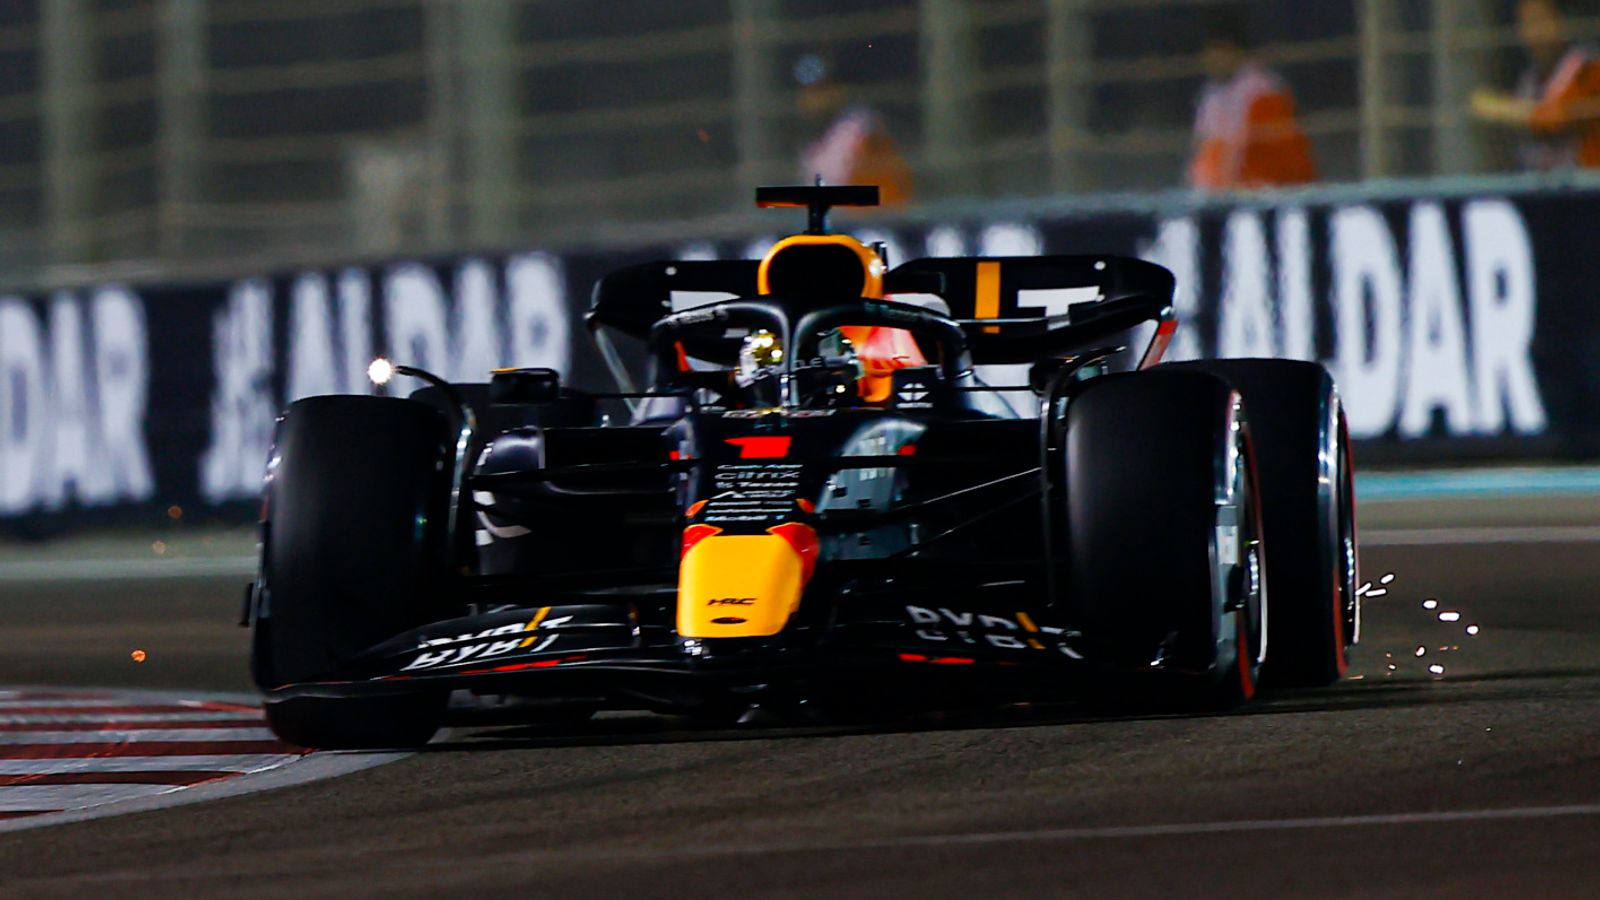 Clasificación del GP de Abu Dhabi: Max Verstappen vence a Sergio Pérez en la pole final de F1 2022 mientras Mercedes retrocede